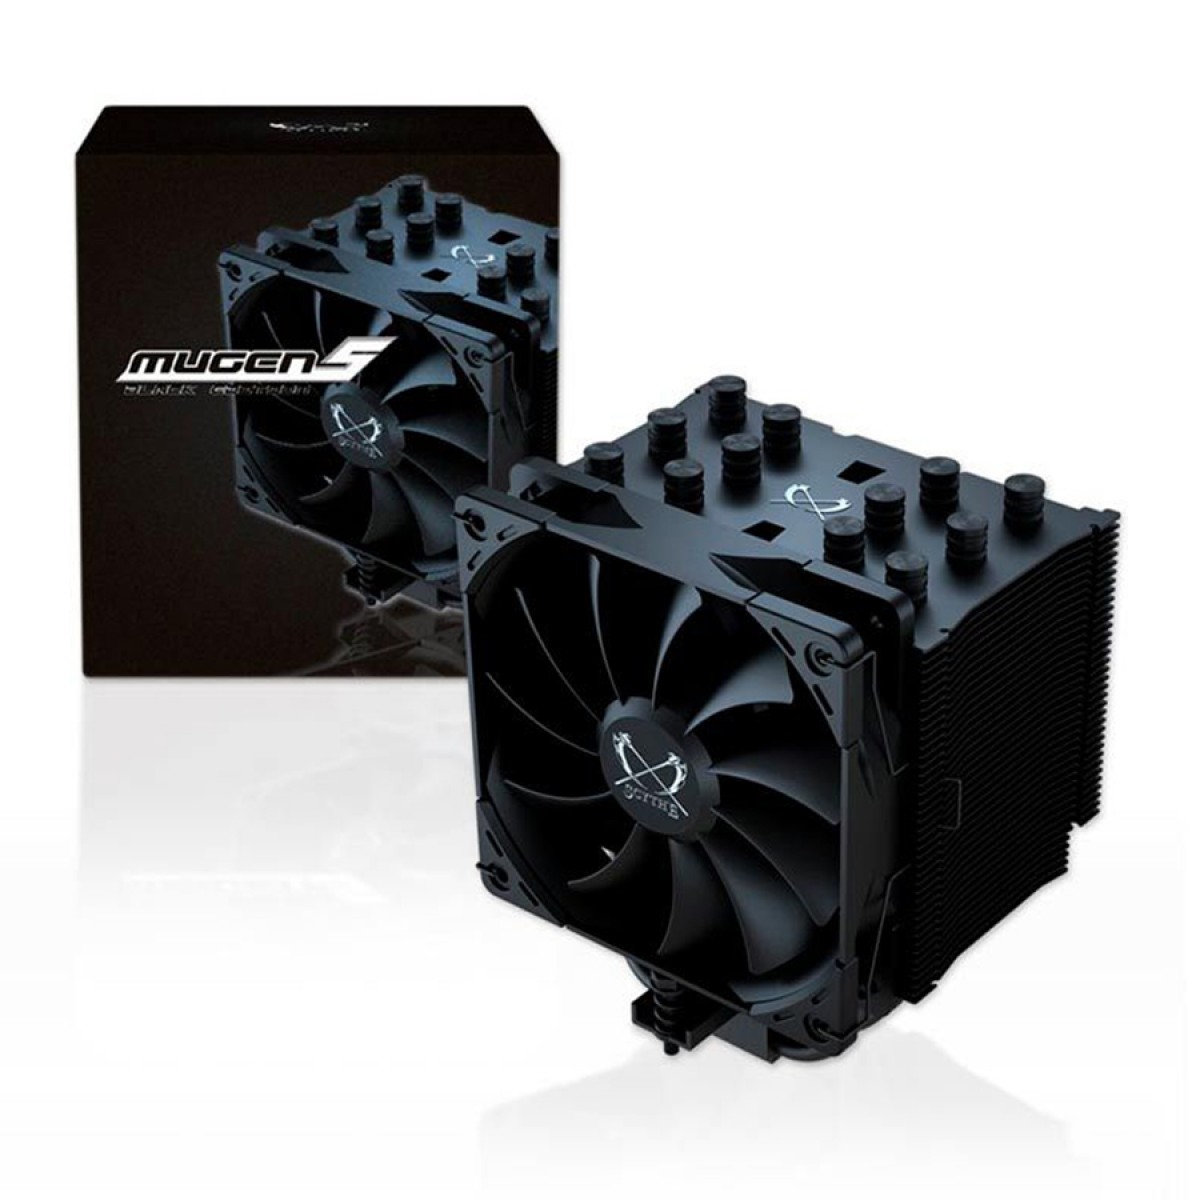 Cooler para Processador Scythe Mugen 5 Black Edition, 120mm, Intel-AMD, SCMG-5100BE